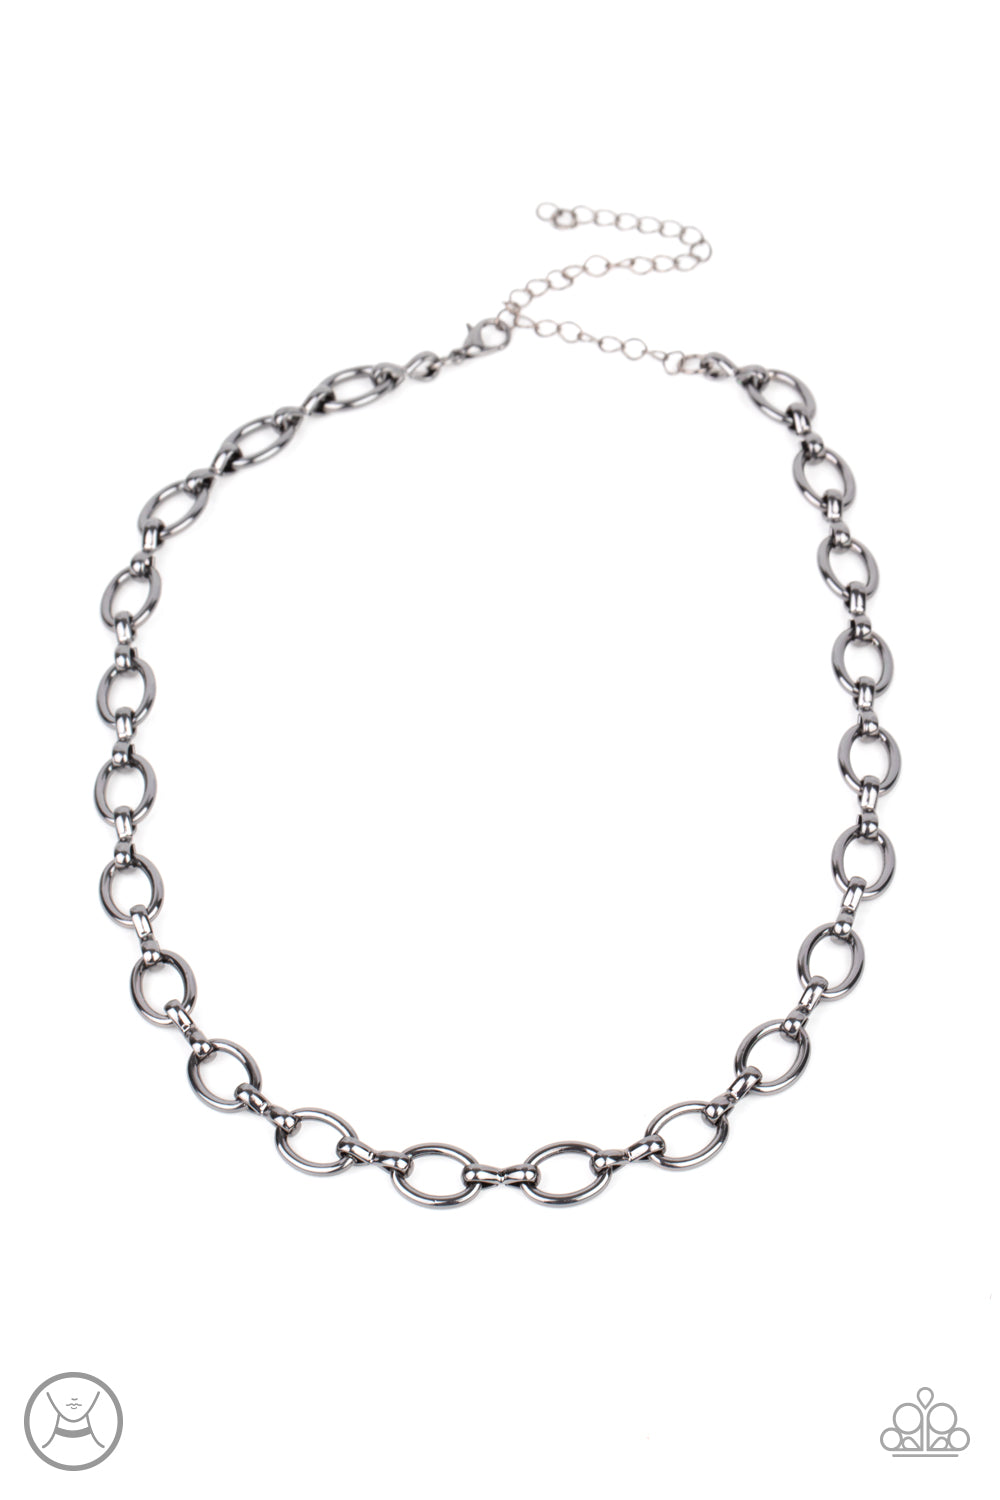 Craveable Couture - Black Necklace